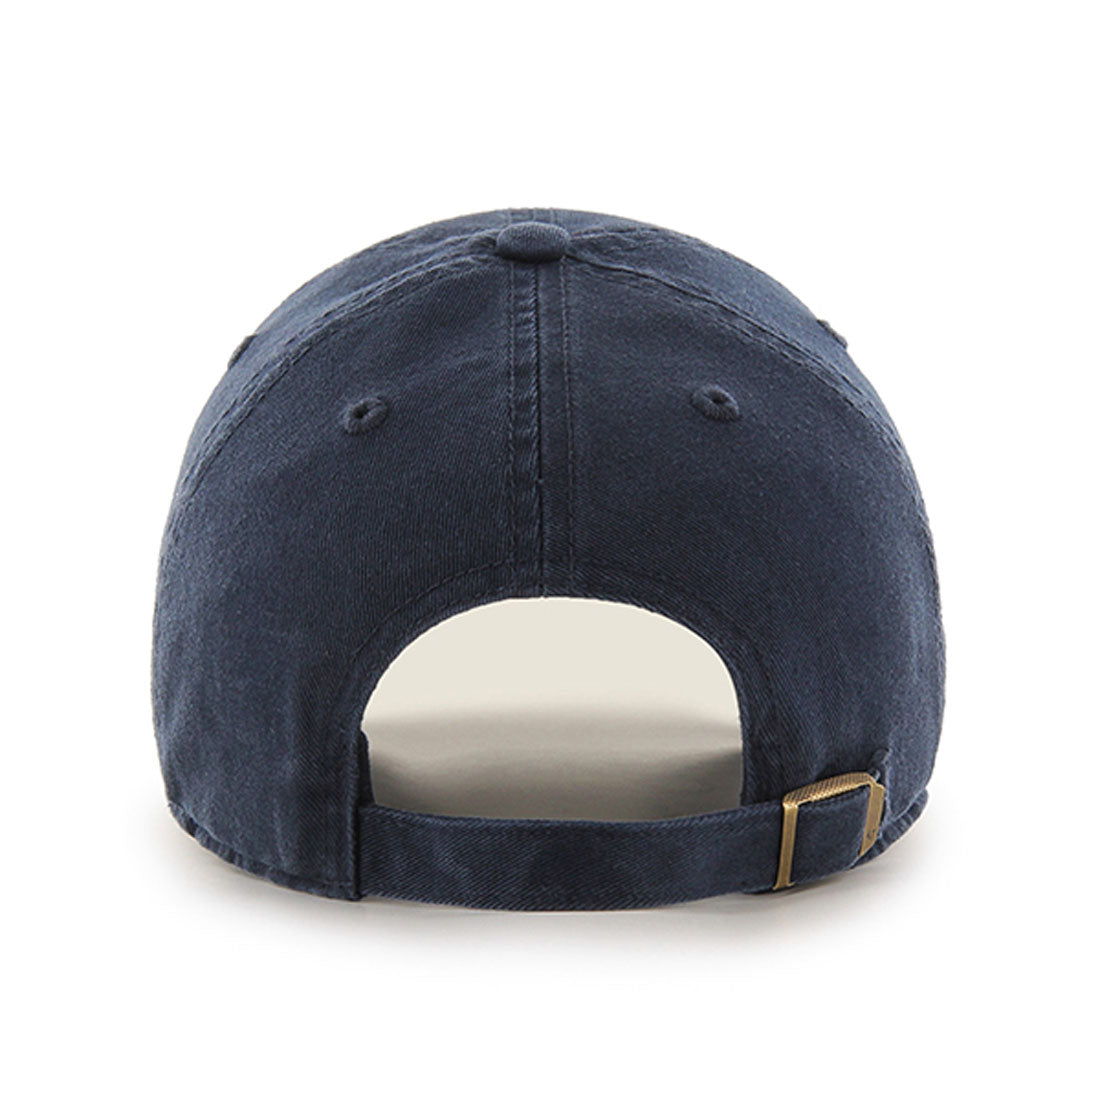 U.C. Berkeley Cal Dad 47 Brand adjustable hat-Navy-Shop College Wear